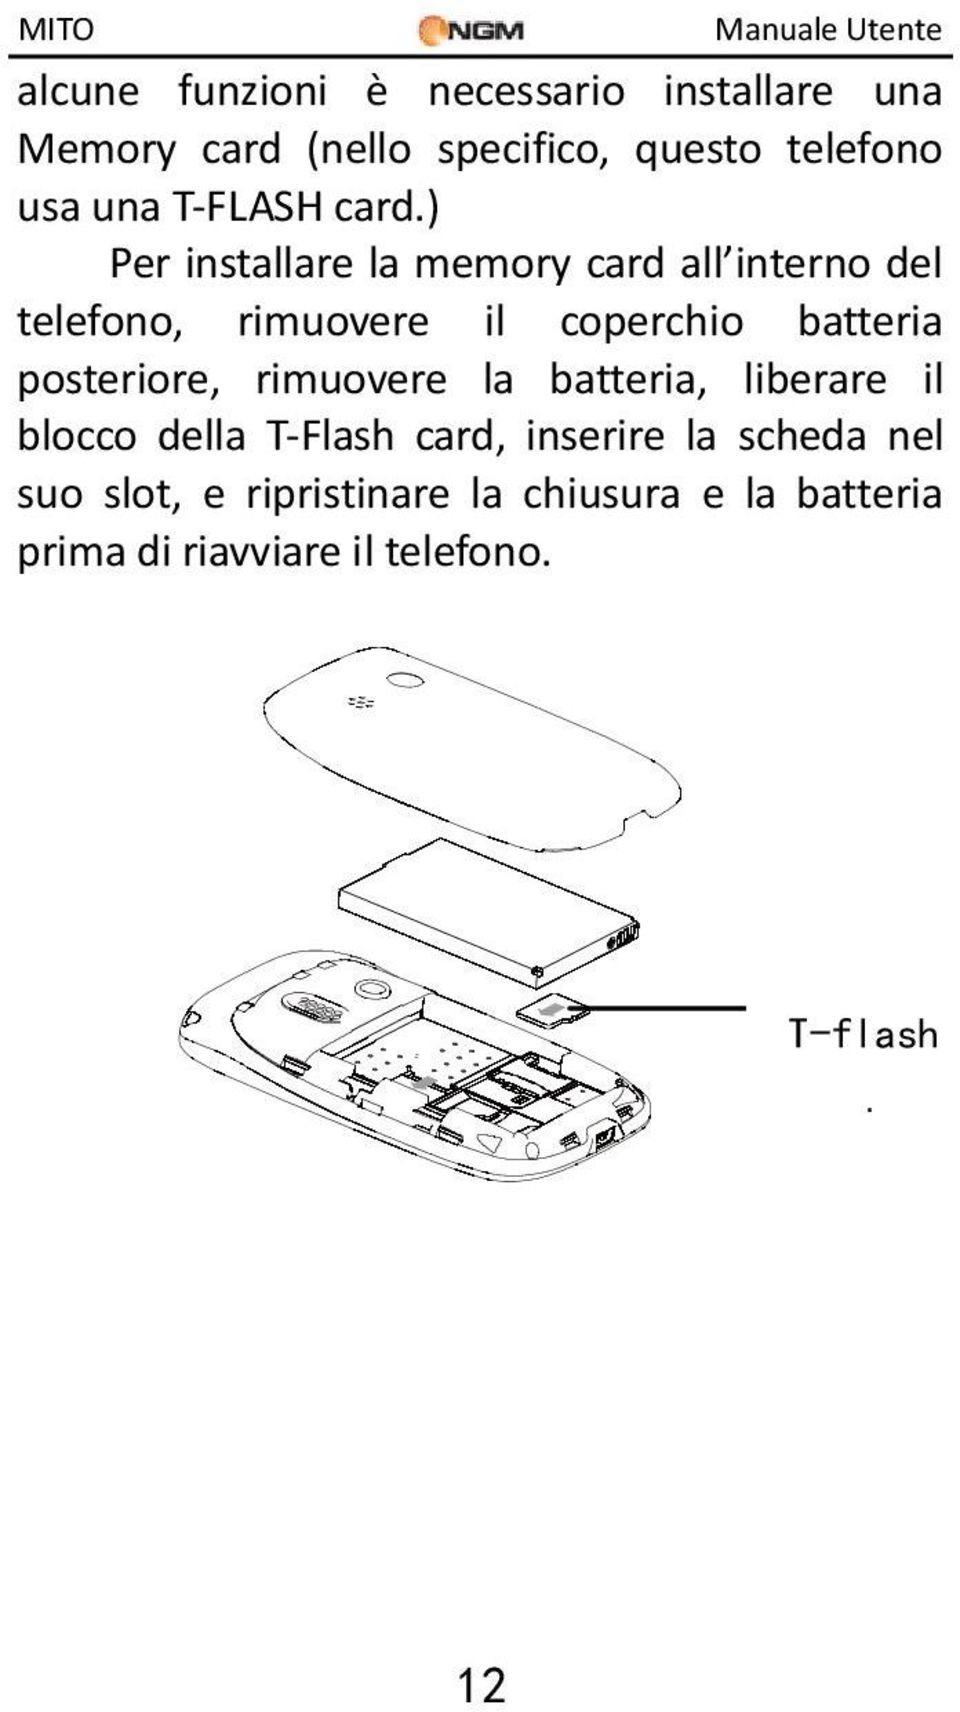 ) Per installare la memory card all interno del telefono, rimuovere il coperchio batteria